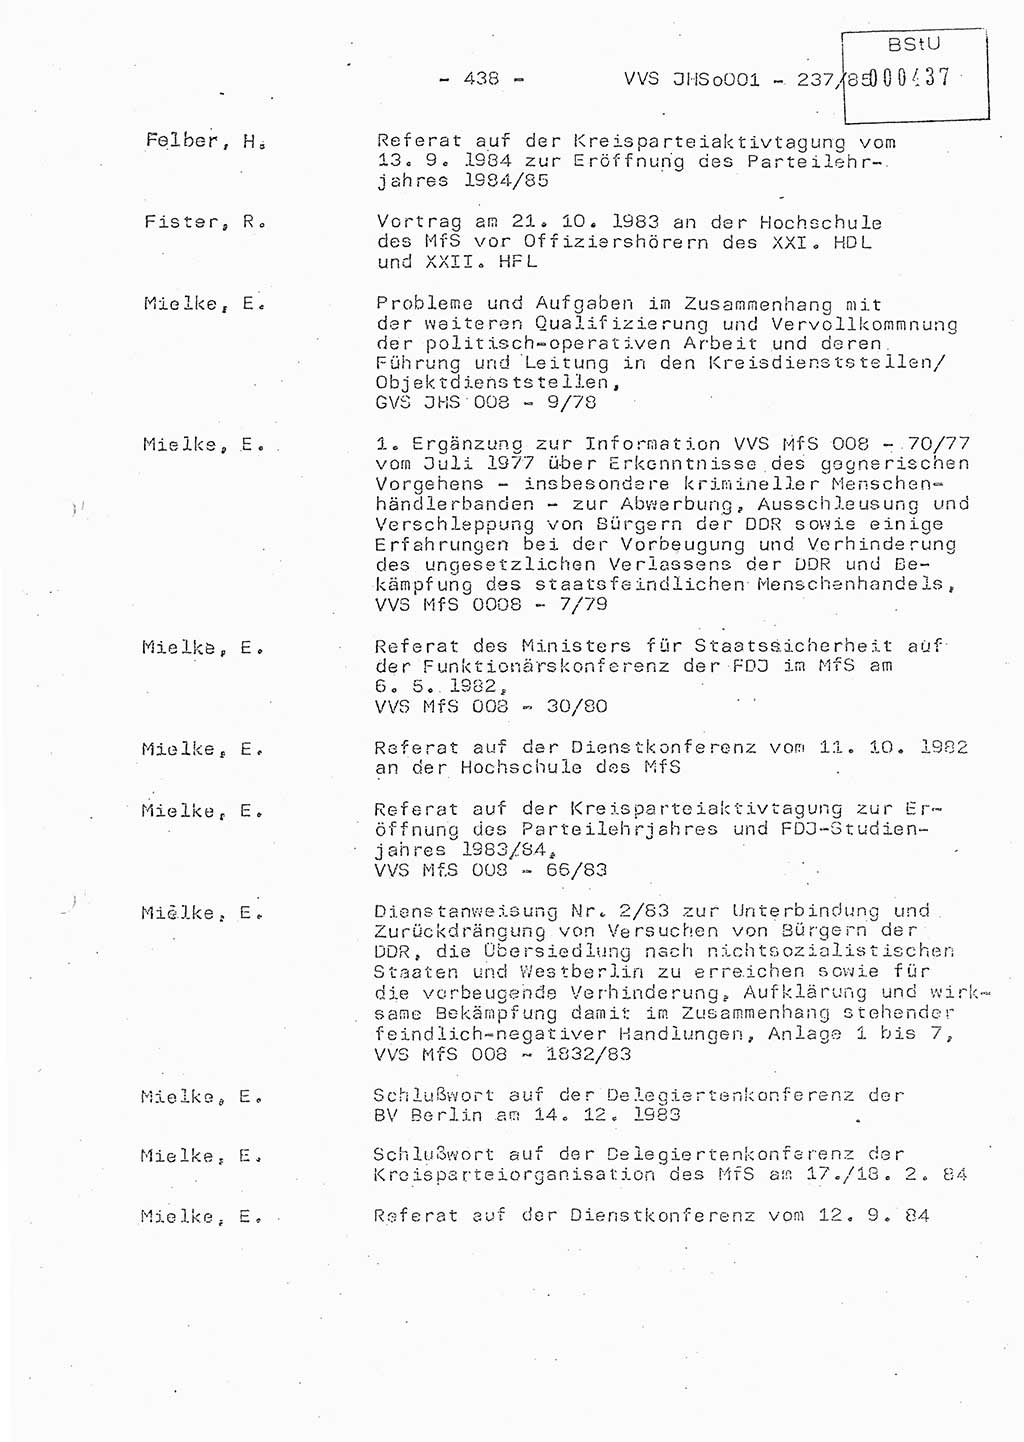 Dissertation Oberstleutnant Peter Jakulski (JHS), Oberstleutnat Christian Rudolph (HA Ⅸ), Major Horst Böttger (ZMD), Major Wolfgang Grüneberg (JHS), Major Albert Meutsch (JHS), Ministerium für Staatssicherheit (MfS) [Deutsche Demokratische Republik (DDR)], Juristische Hochschule (JHS), Vertrauliche Verschlußsache (VVS) o001-237/85, Potsdam 1985, Seite 438 (Diss. MfS DDR JHS VVS o001-237/85 1985, S. 438)